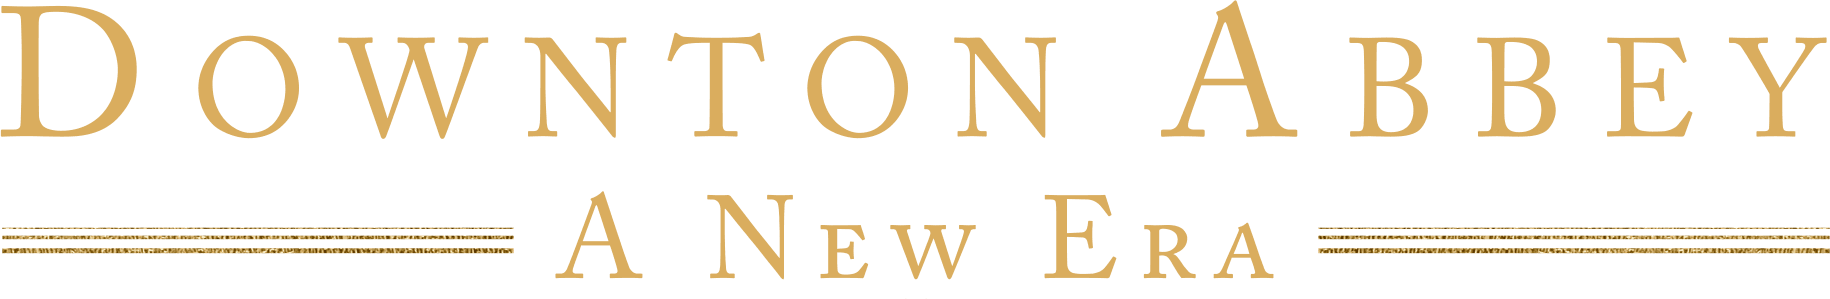 Downton Abbey: A New Era logo